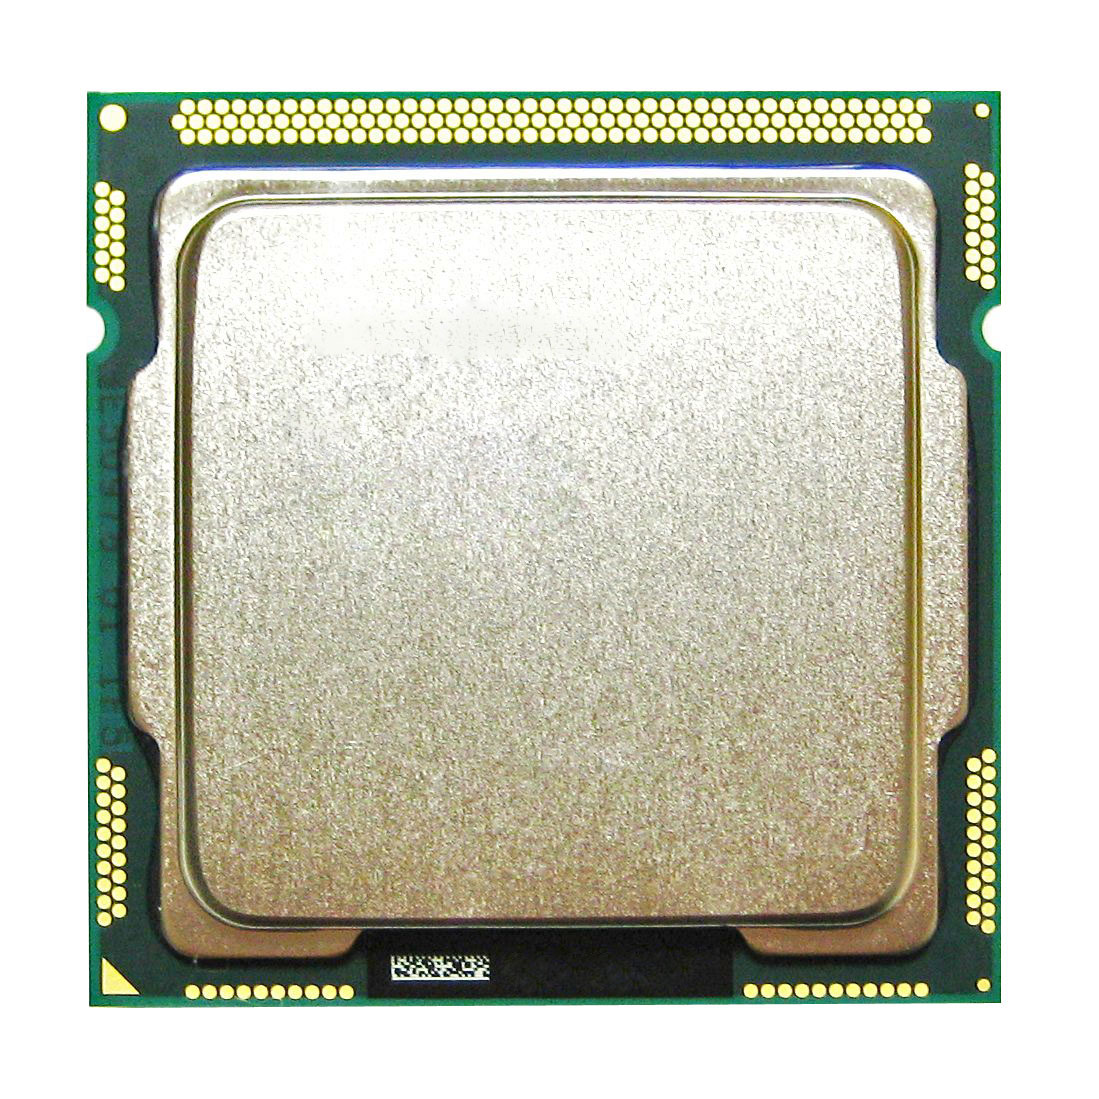 SR00S Intel Core i5-2400S Quad Core 2.50GHz 5.00GT/s DMI 6MB L3 Cache Socket LGA1155 Desktop Processor